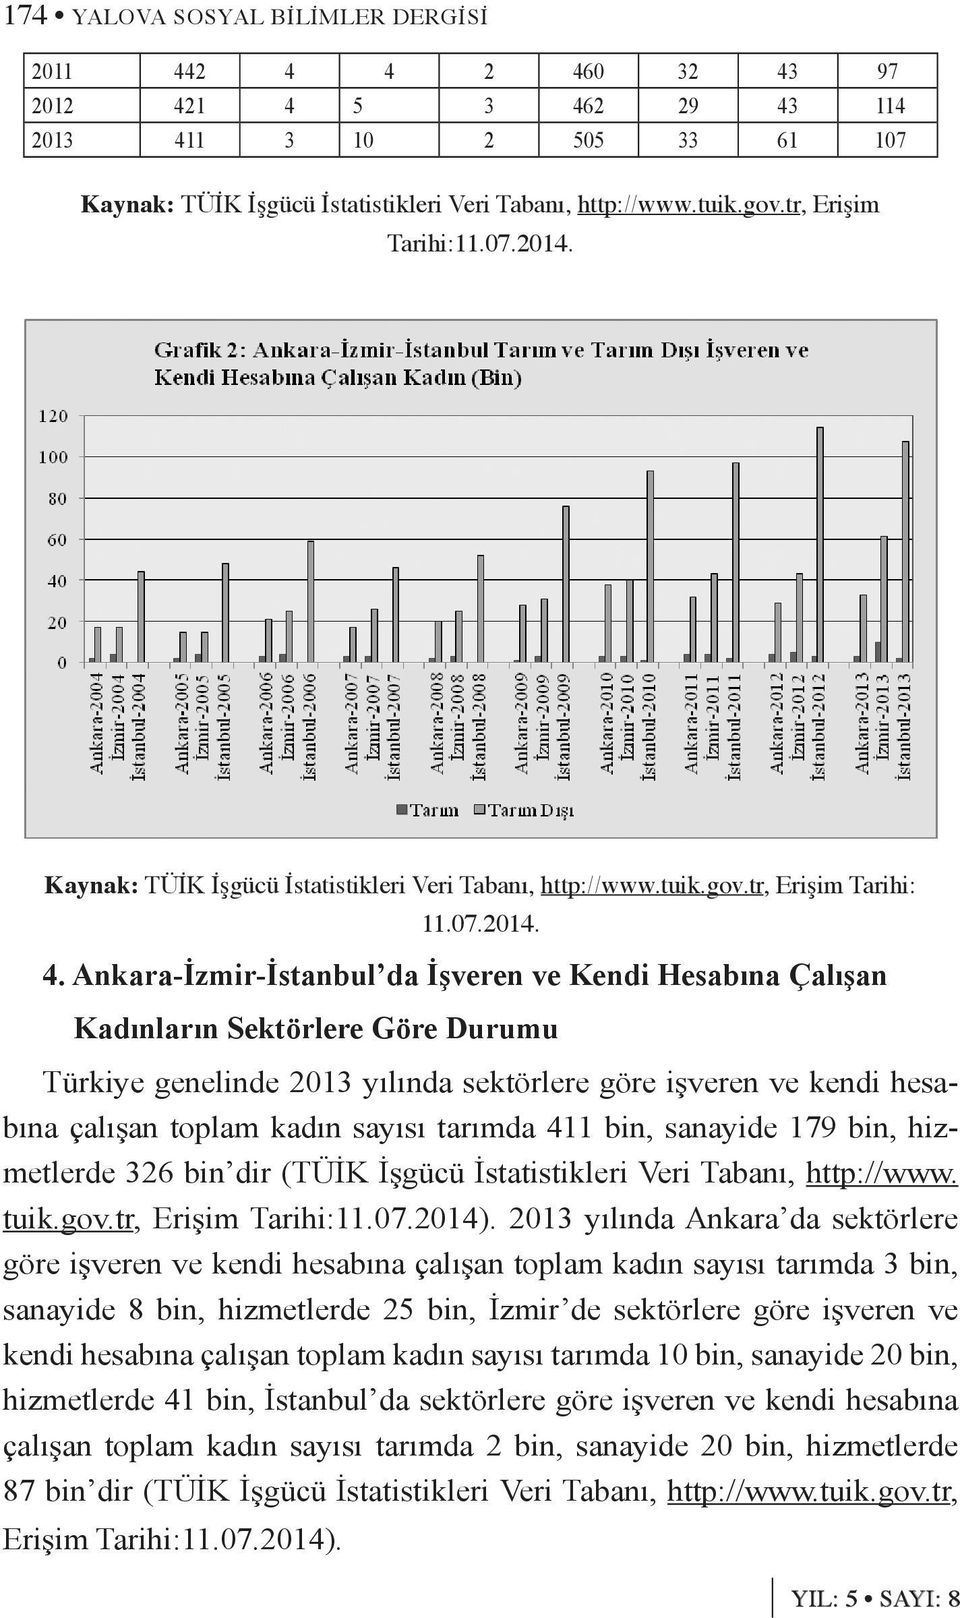 Ankara-İzmir-İstanbul da İşveren ve Kendi Hesabına Çalışan Kadınların Sektörlere Göre Durumu Türkiye genelinde 2013 yılında sektörlere göre işveren ve kendi hesabına çalışan toplam kadın sayısı